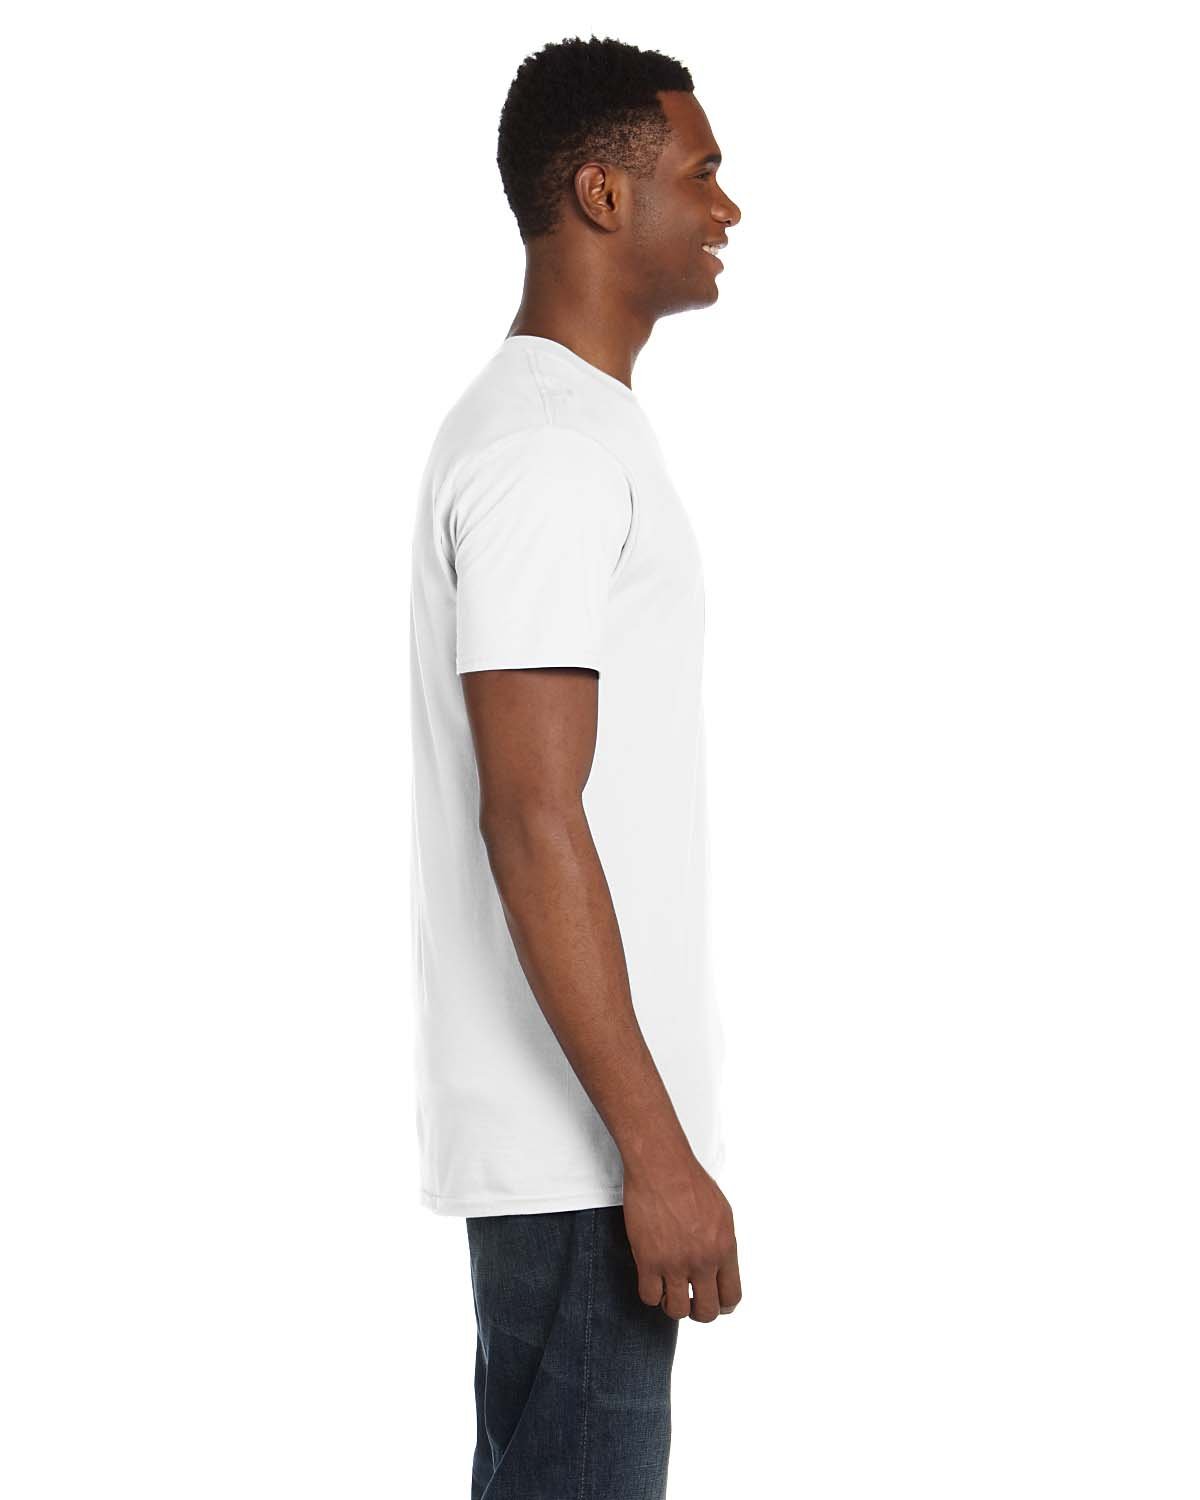 Hanes Men's Nano-T T-shirt, White 2XL(Tall)